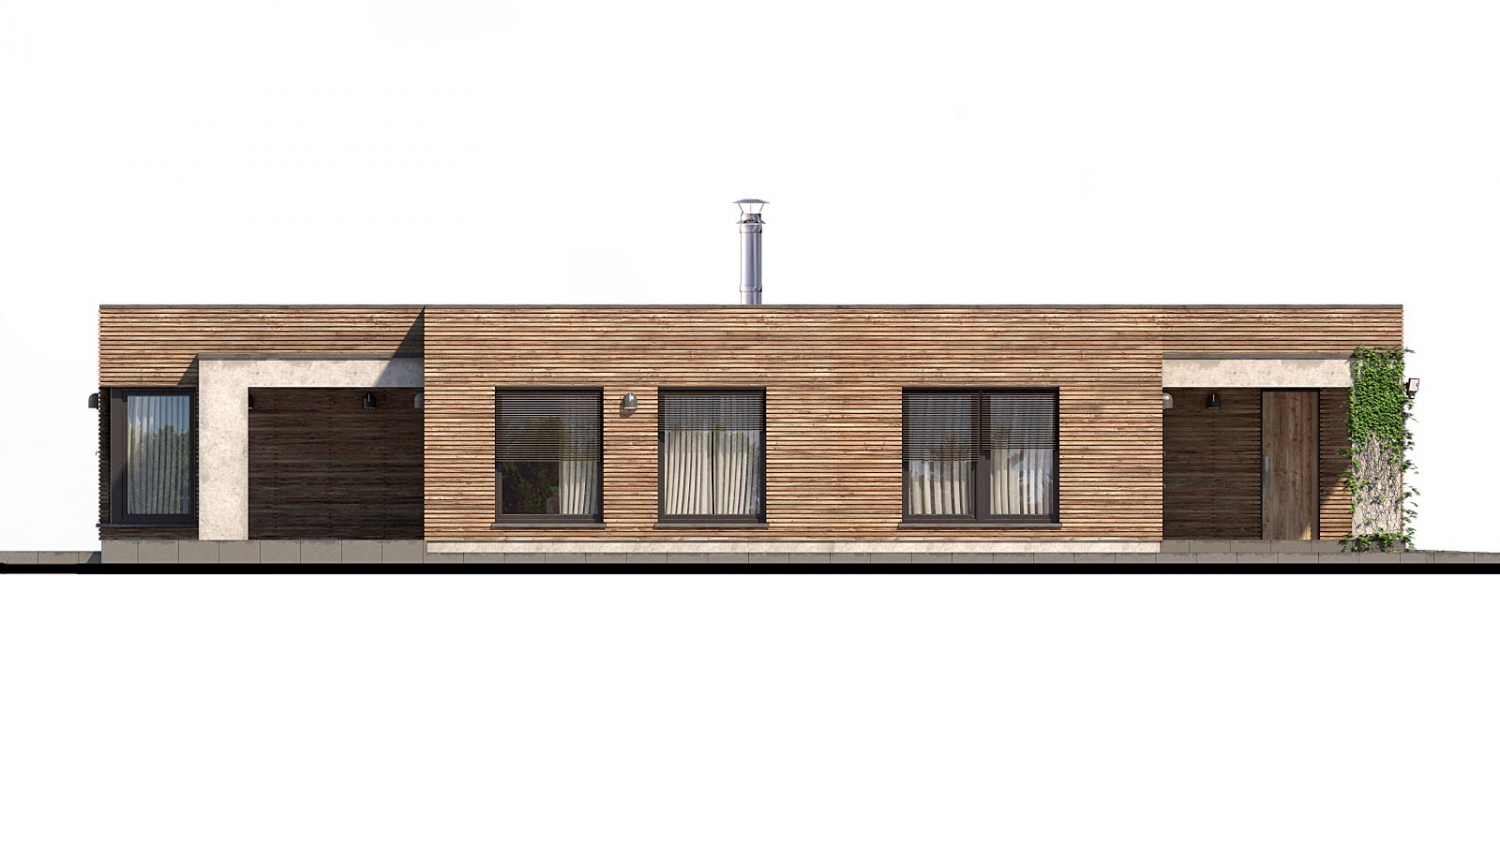 Zrkadlový pohľad 4. - Luxusní 4-pokojový zděný dům s dvojgaráží, plochou rovnou střechou.